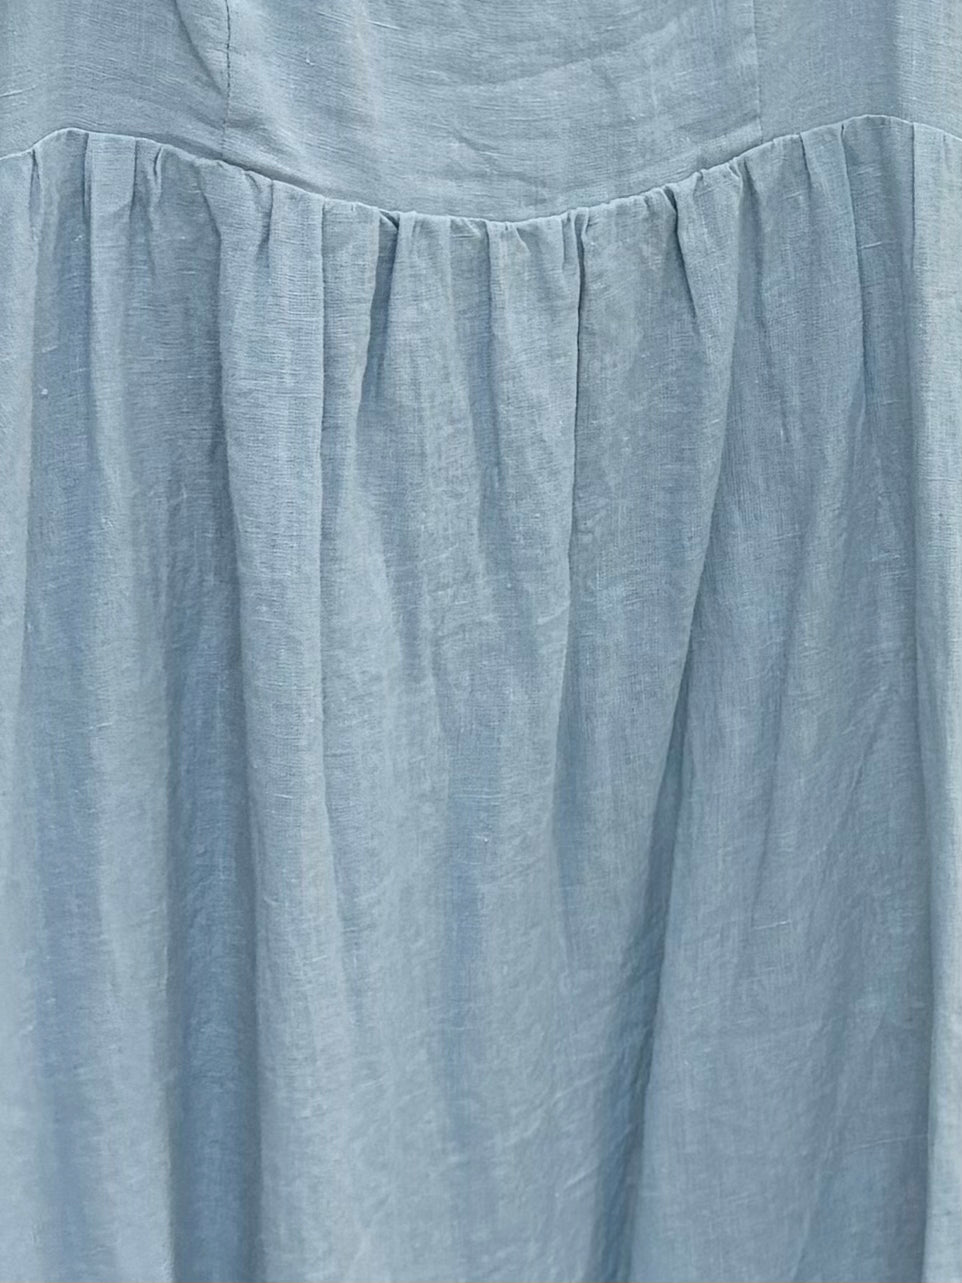 Candace Maxi Dress in Light Blue - 100% Linen - Bump Friendly